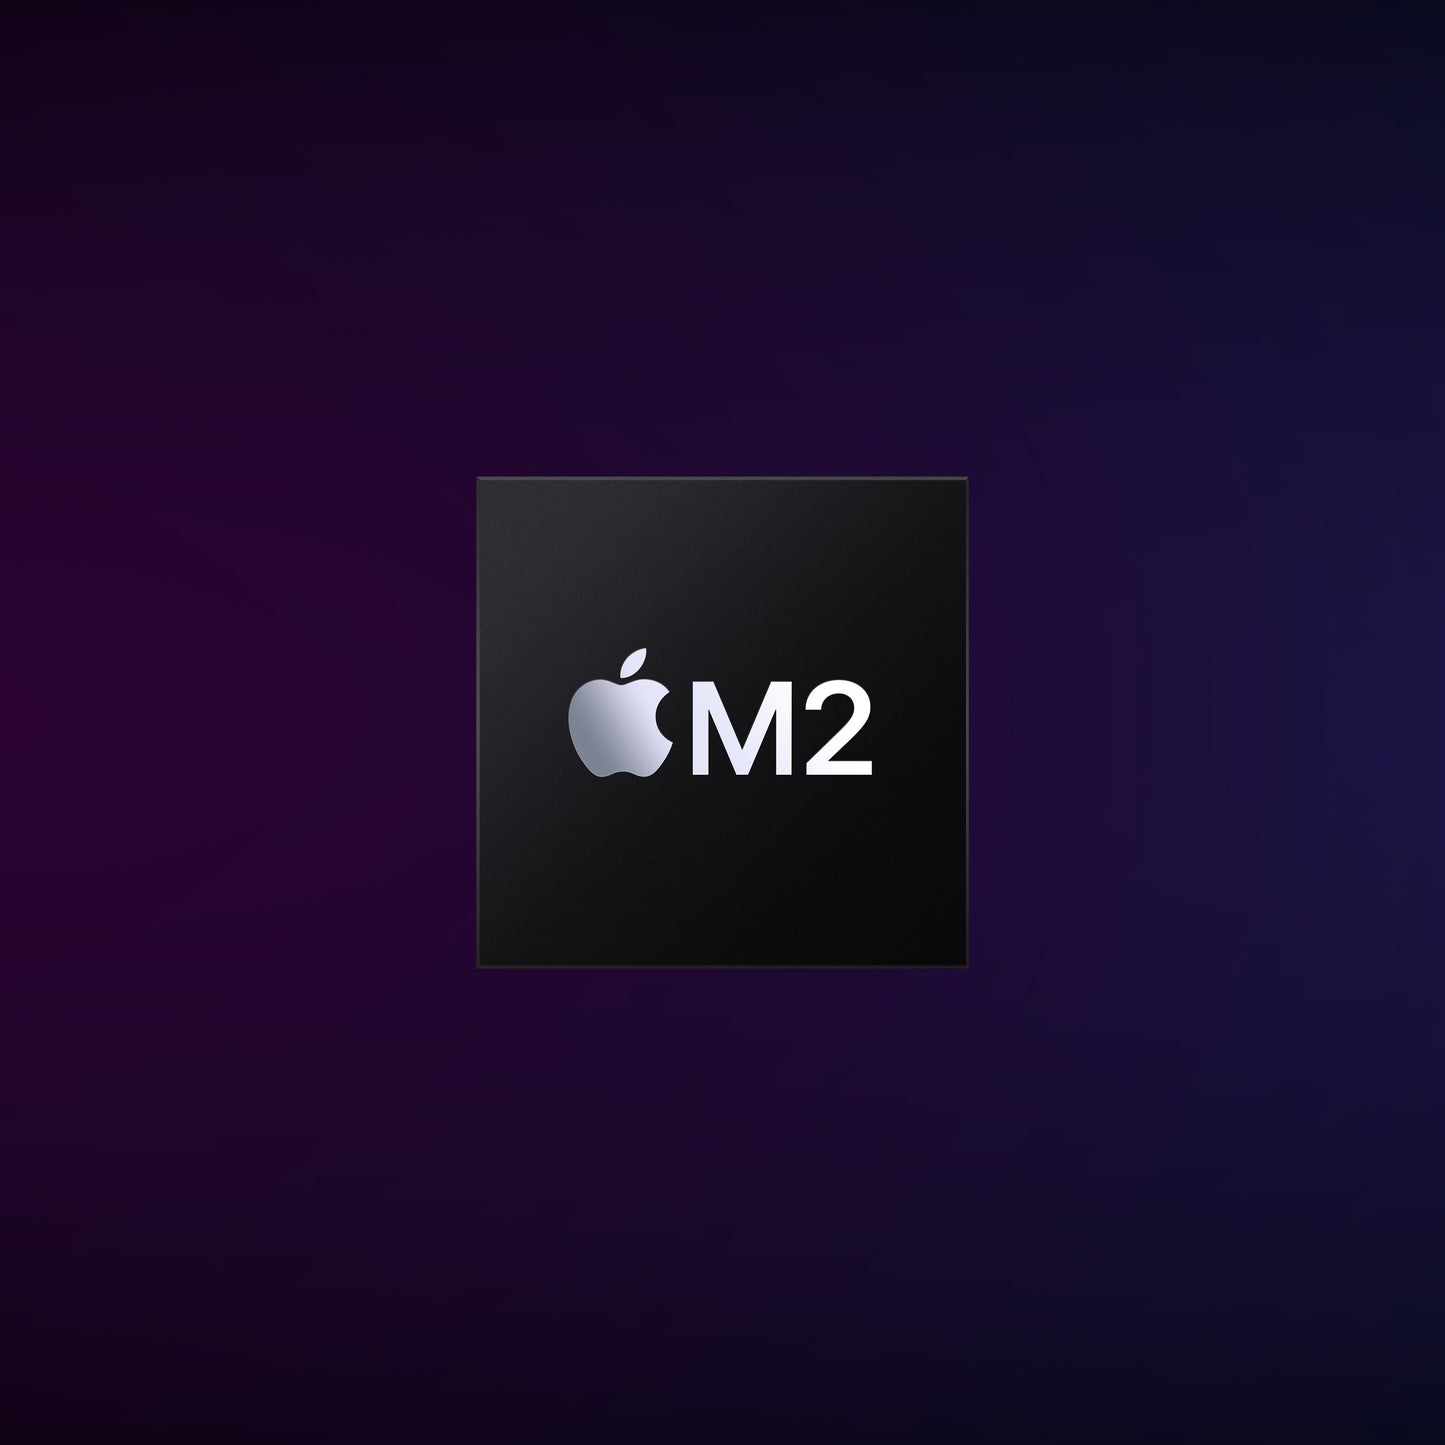 Mac mini: Apple M2 chip with 8? core CPU and 10? core GPU, 256GB SSD - Silver